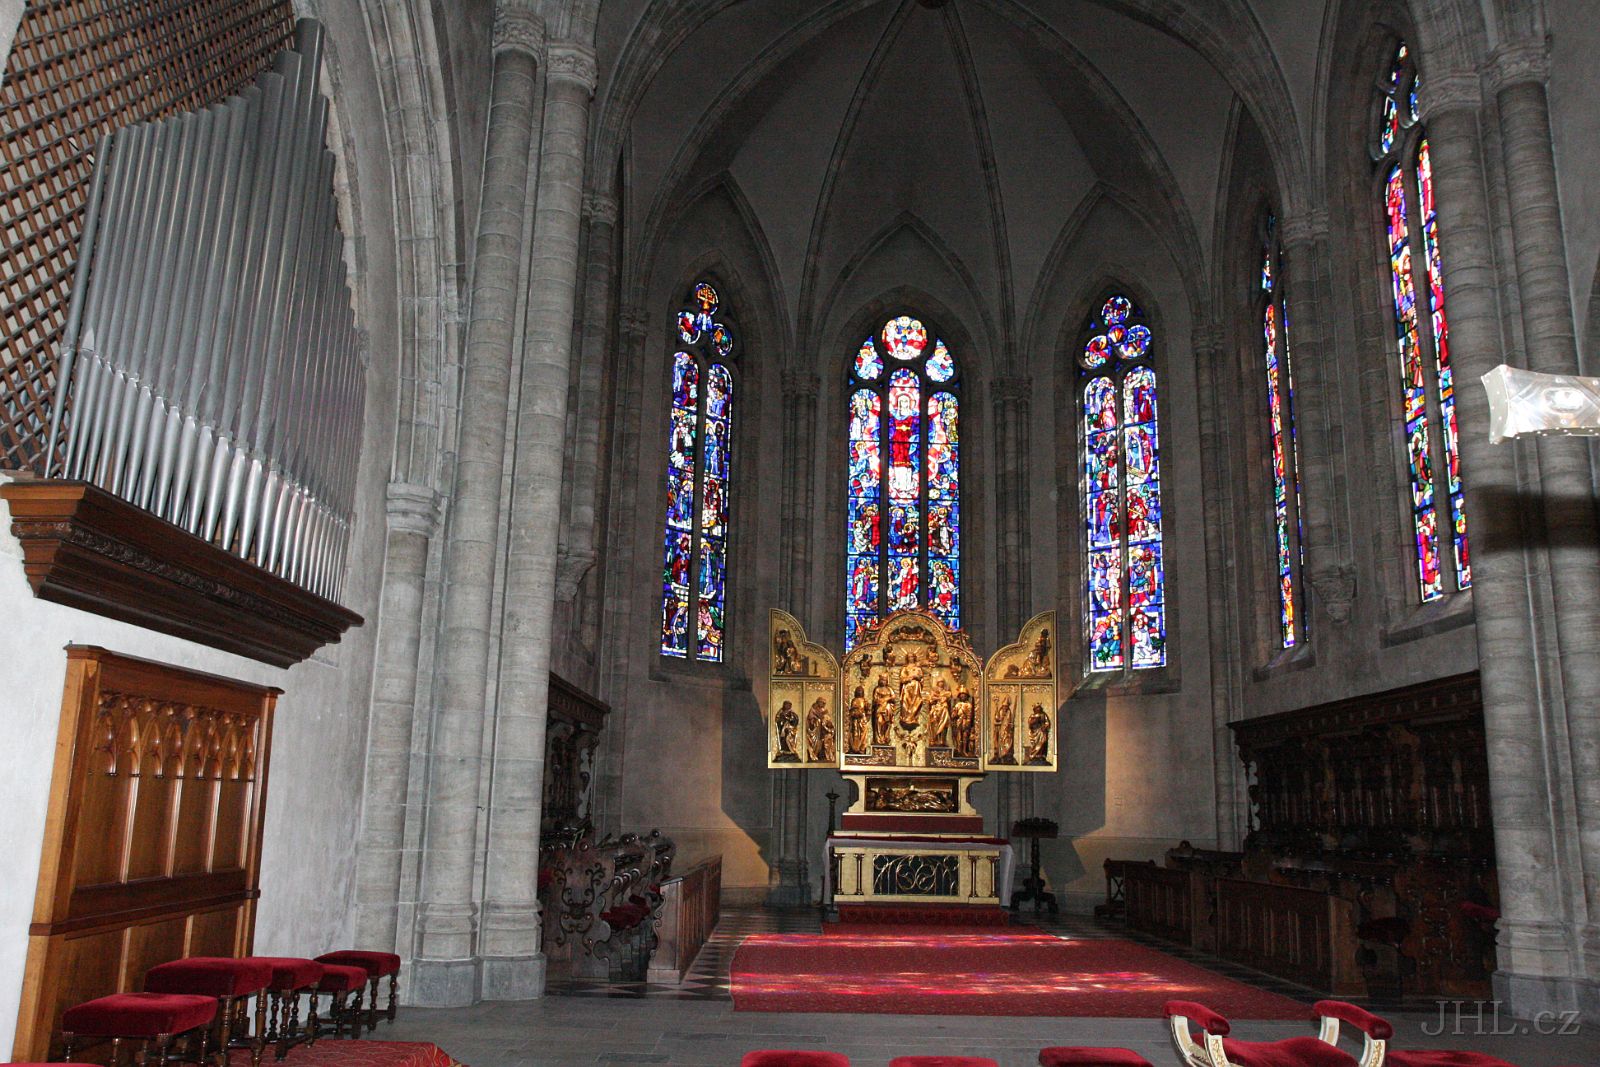 080827cc022.JPG - Sion - Cathédrale de Notre Dame du Glarier